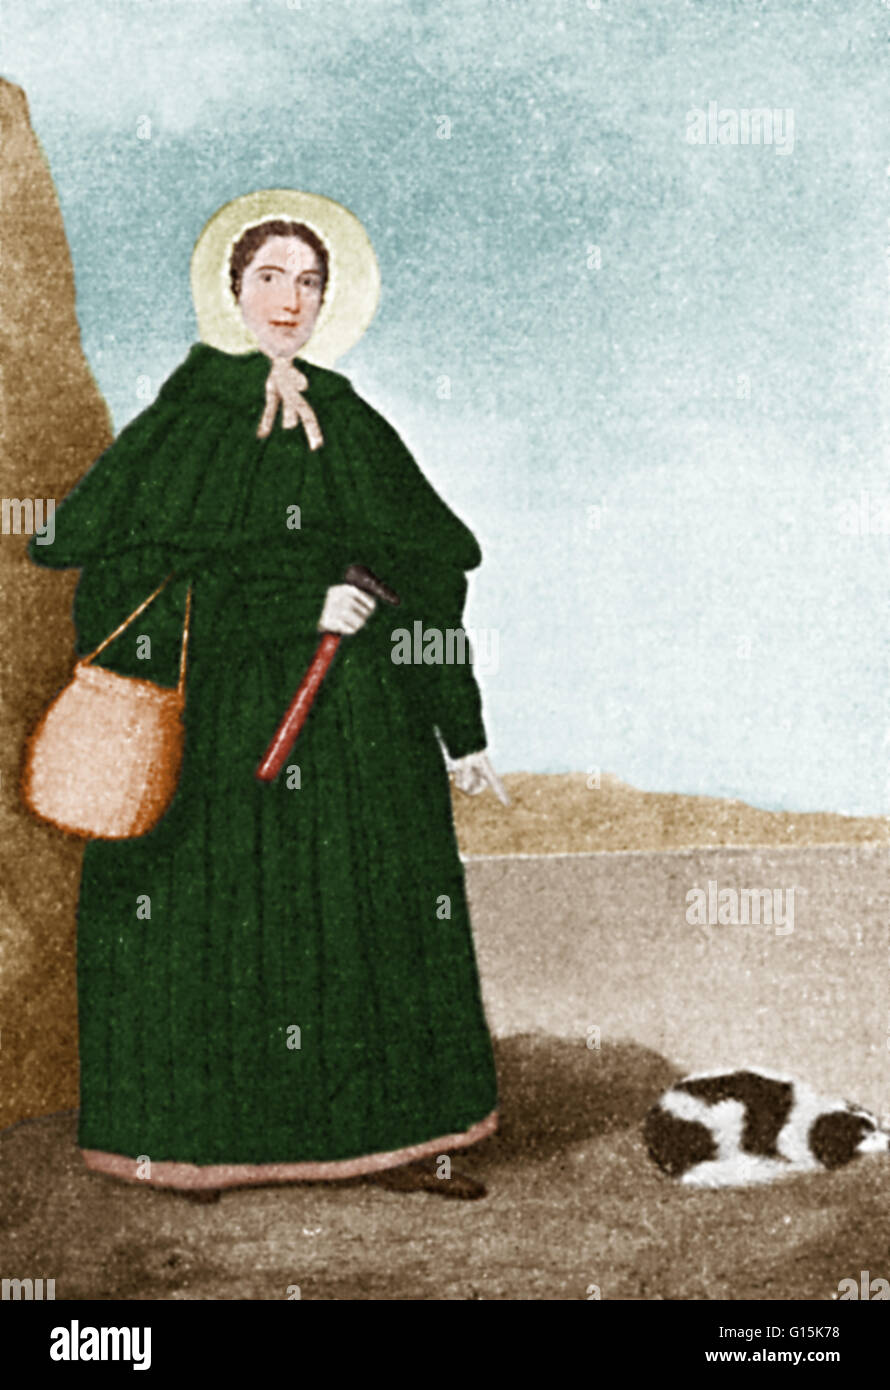 Mary Anning mit ihrem Hund Tablett, gemalt vor 1842. Die goldene Kappe Felsen kann im Hintergrund zu sehen. Anning (1799-1847) war ein englischer Fossil Sammler, Händler und Paläontologe, die auf der ganzen Welt für eine Reihe von wichtigen Funden wurde sie bekannt Stockfoto